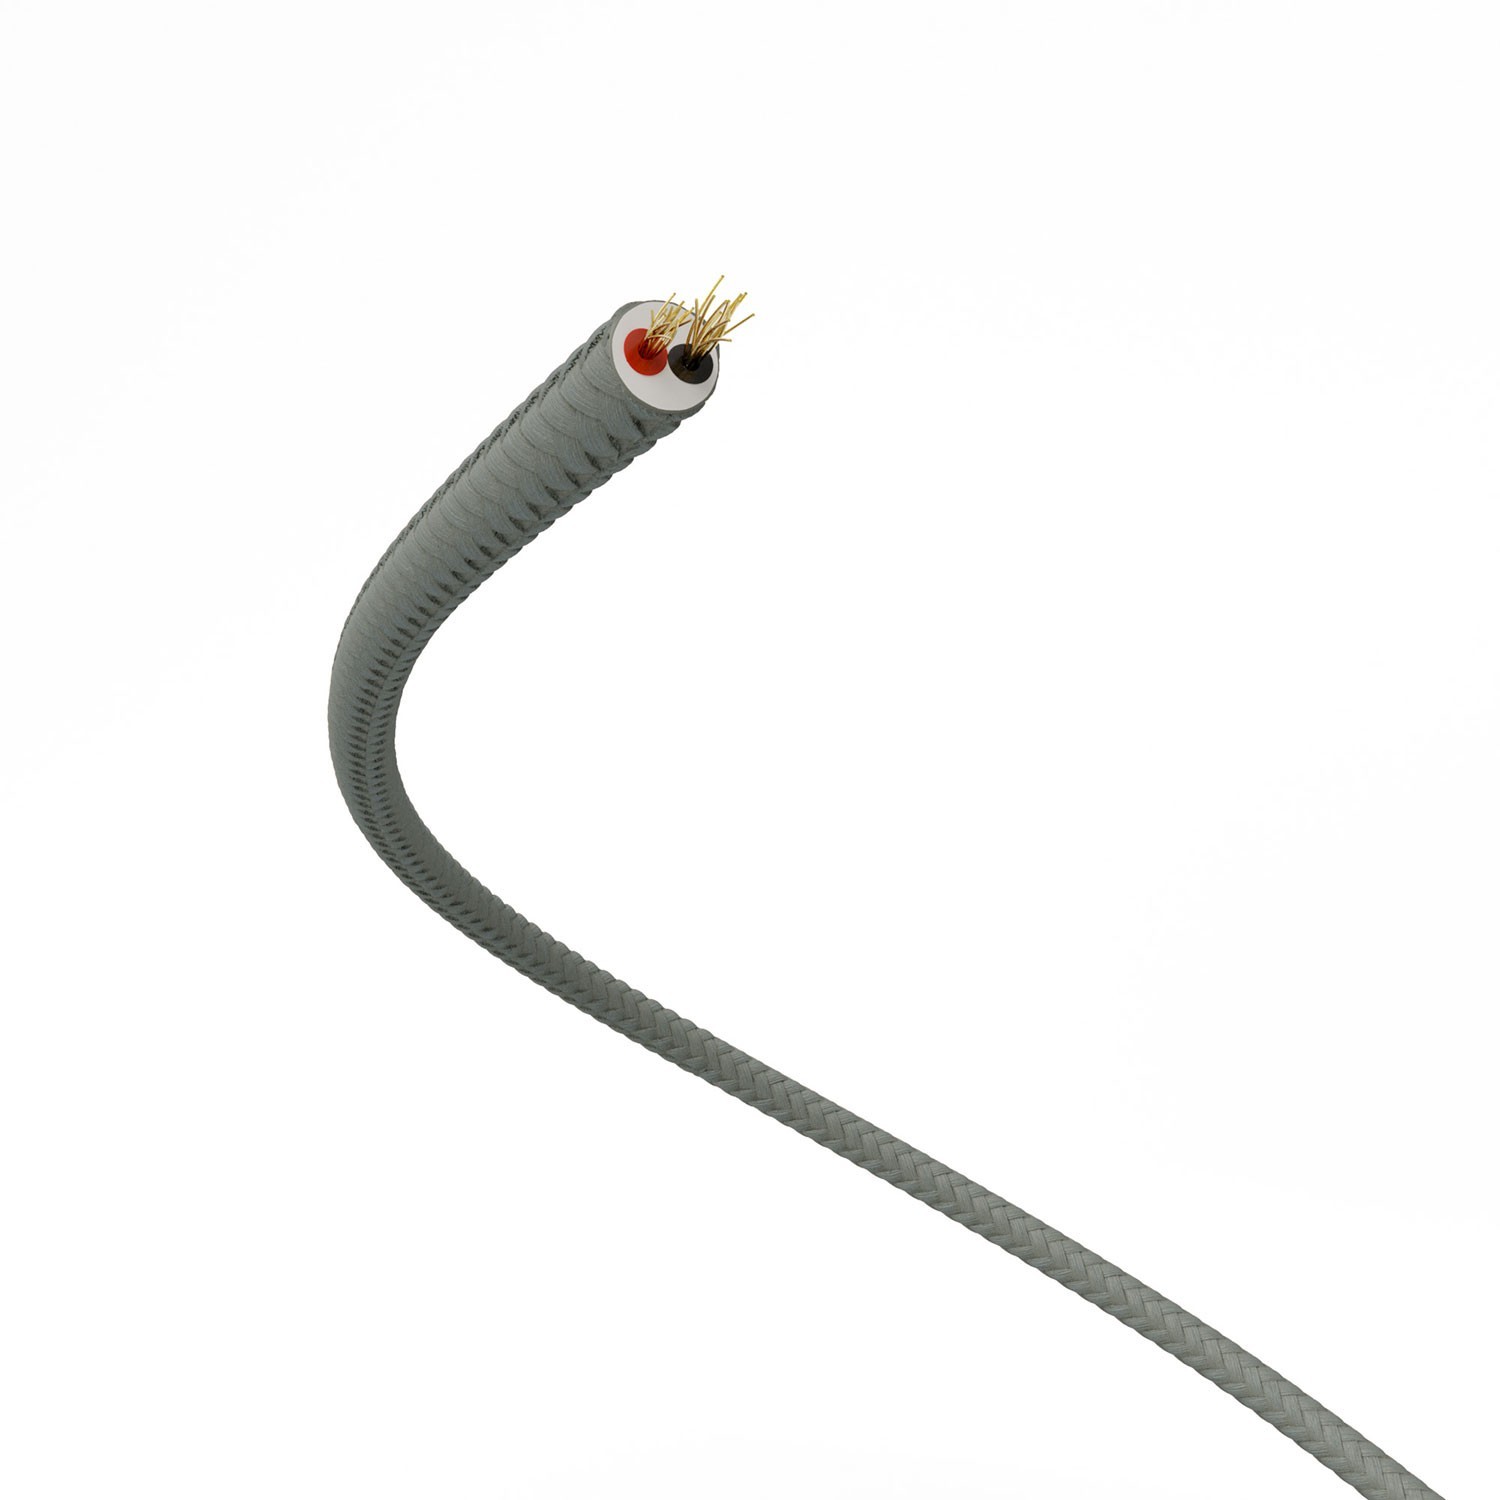 Cable de alimentación Extra Low Voltage revestido de tejido efecto seda Gris RM03 - 50 m